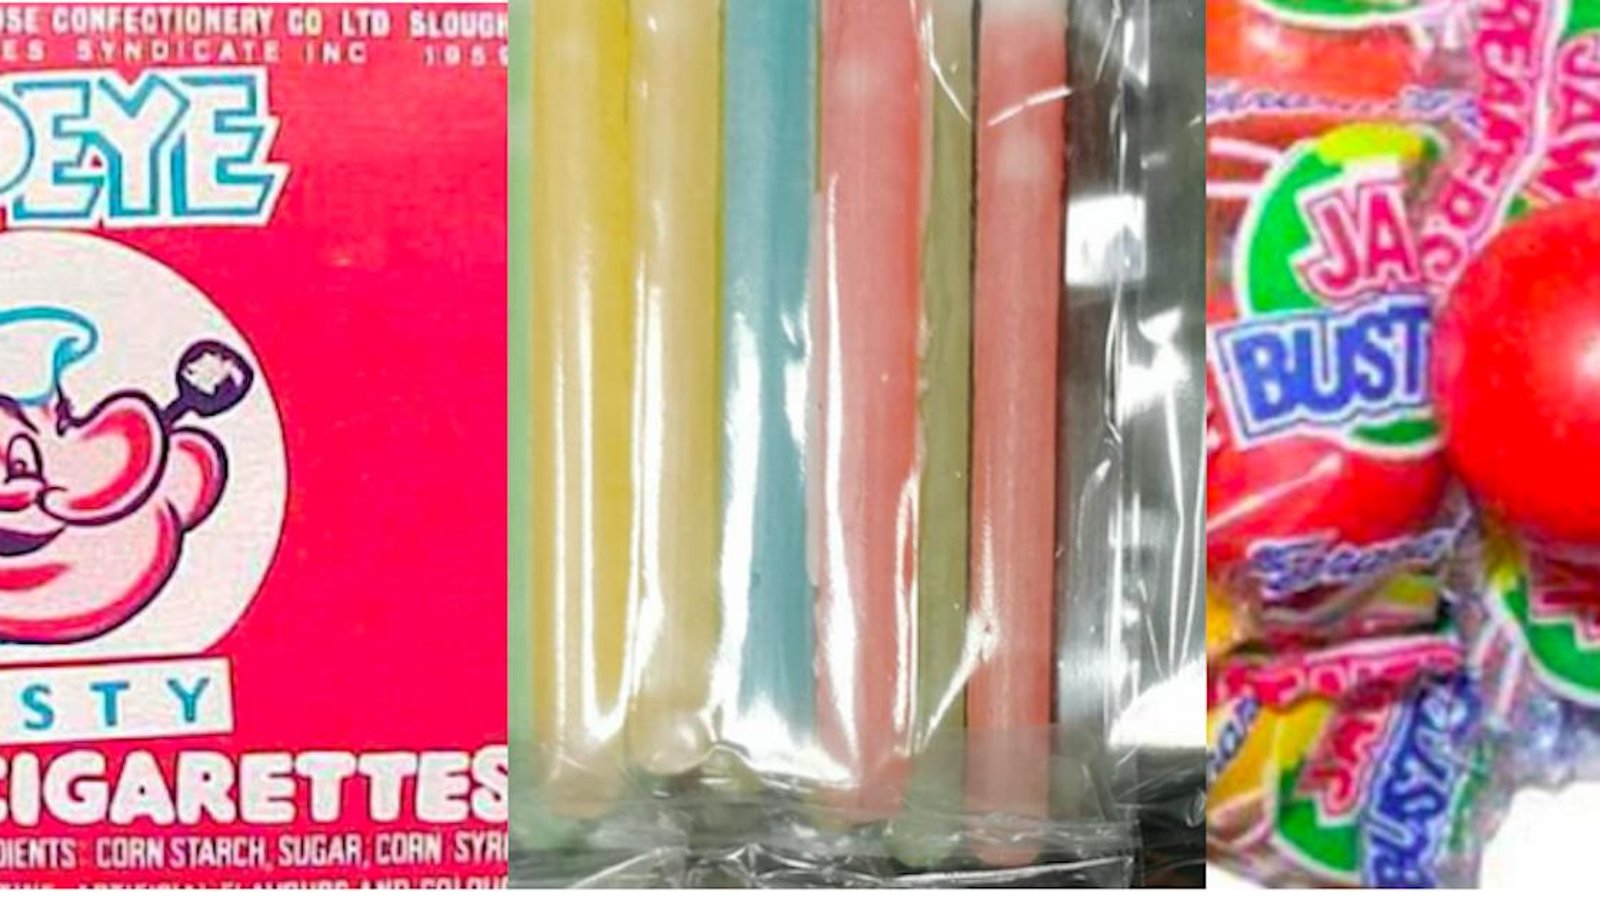 Alerte nostalgie: est-ce que ces 15 bonbons ont accompagné votre enfance?